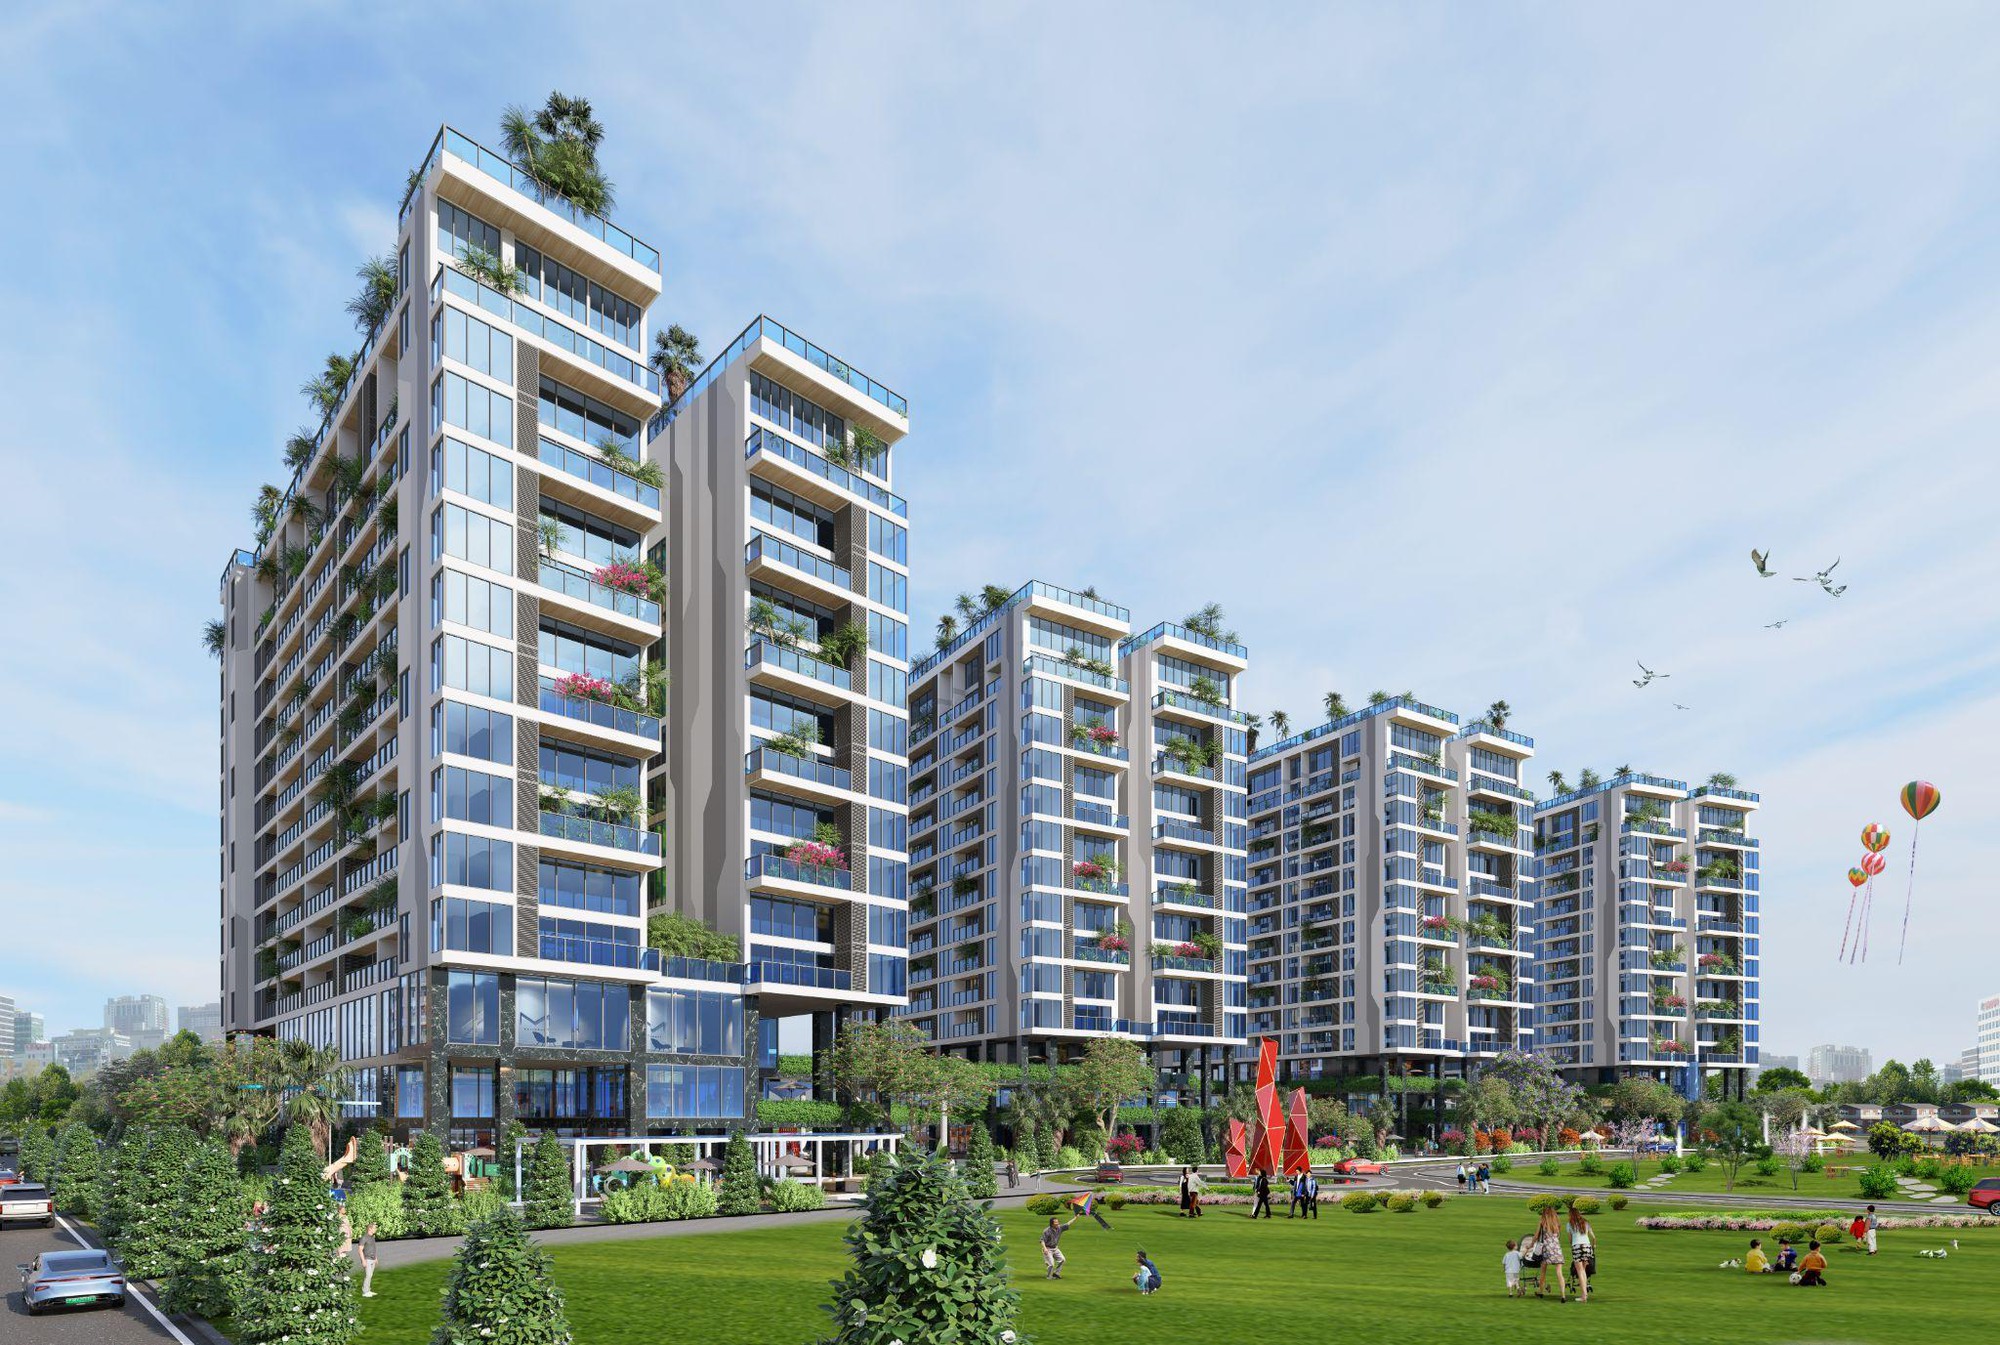 Gần 400 căn hộ xanh - thông minh Sunshine Green Iconic sắp xuất hiện tại khu Đông Hà Nội- Ảnh 4.